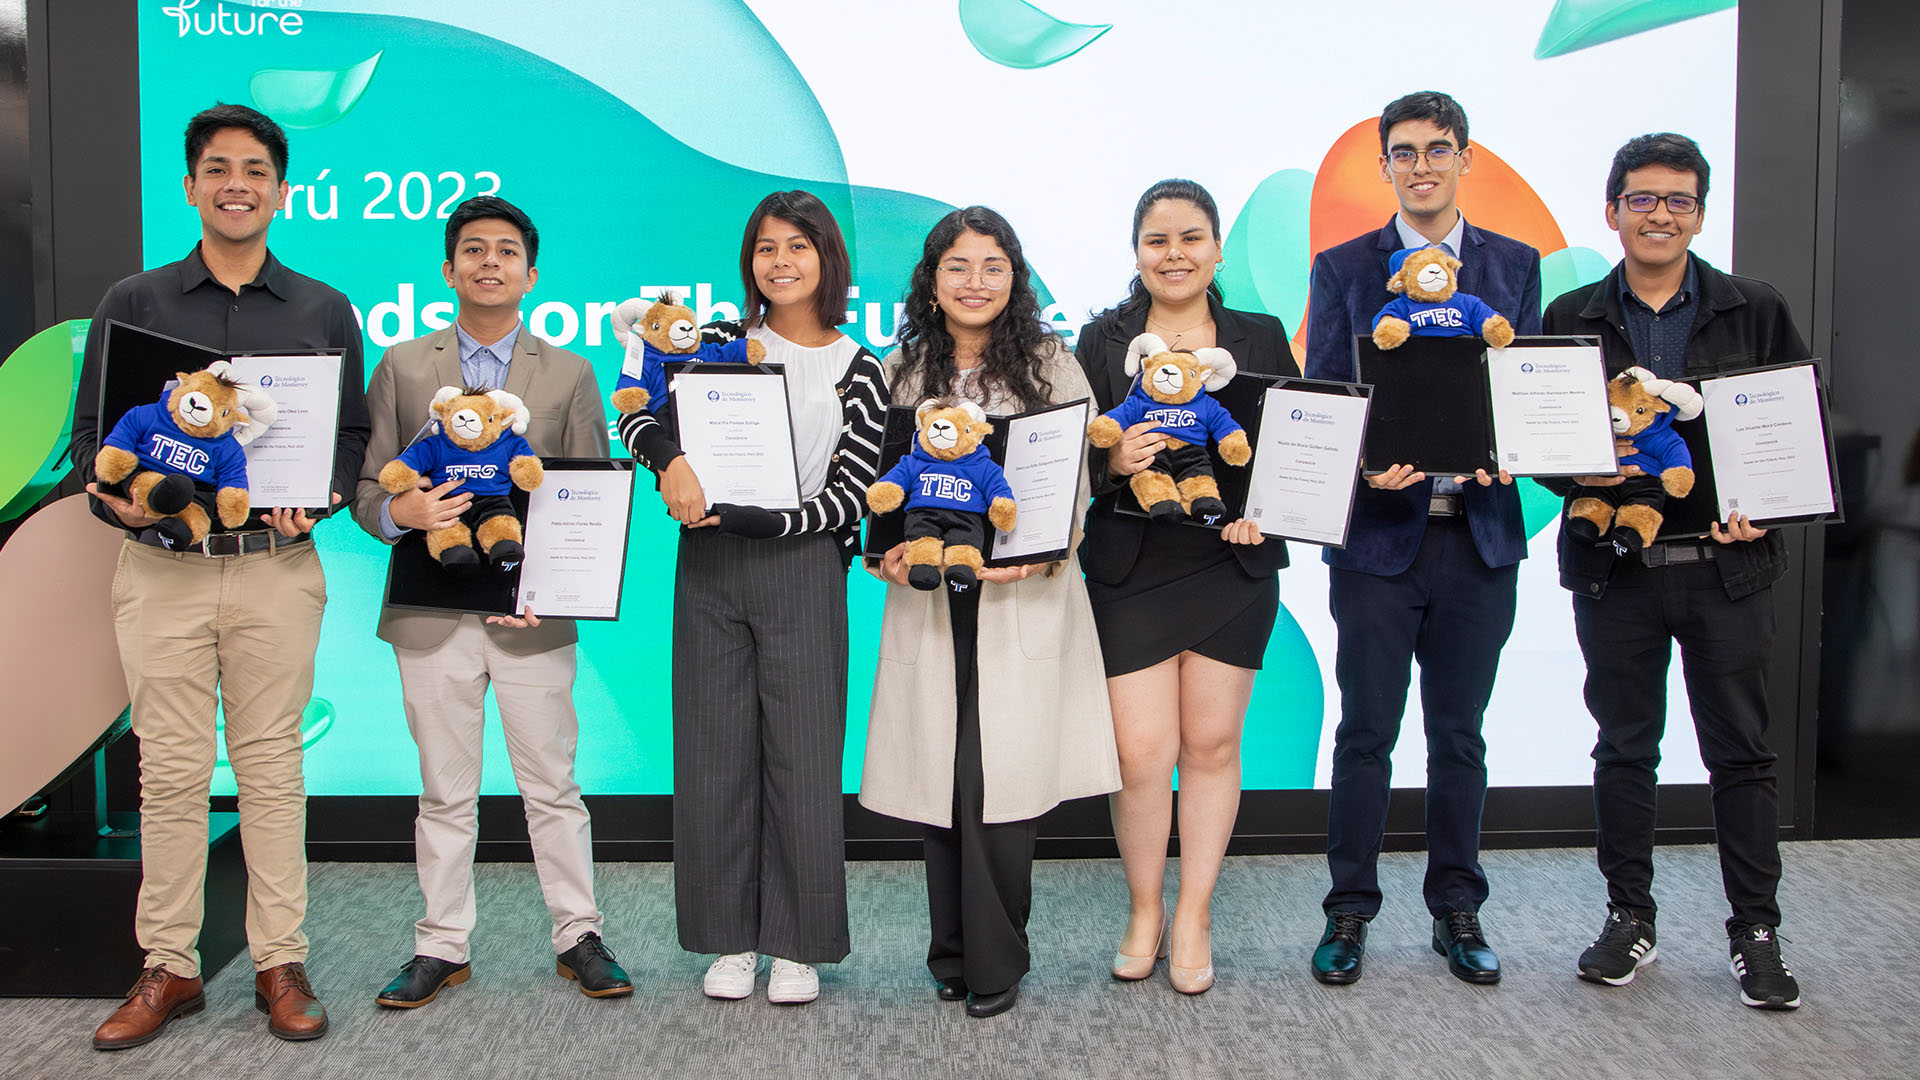 7 estudiantes PUCP participaron en Seed for the future de Huawei